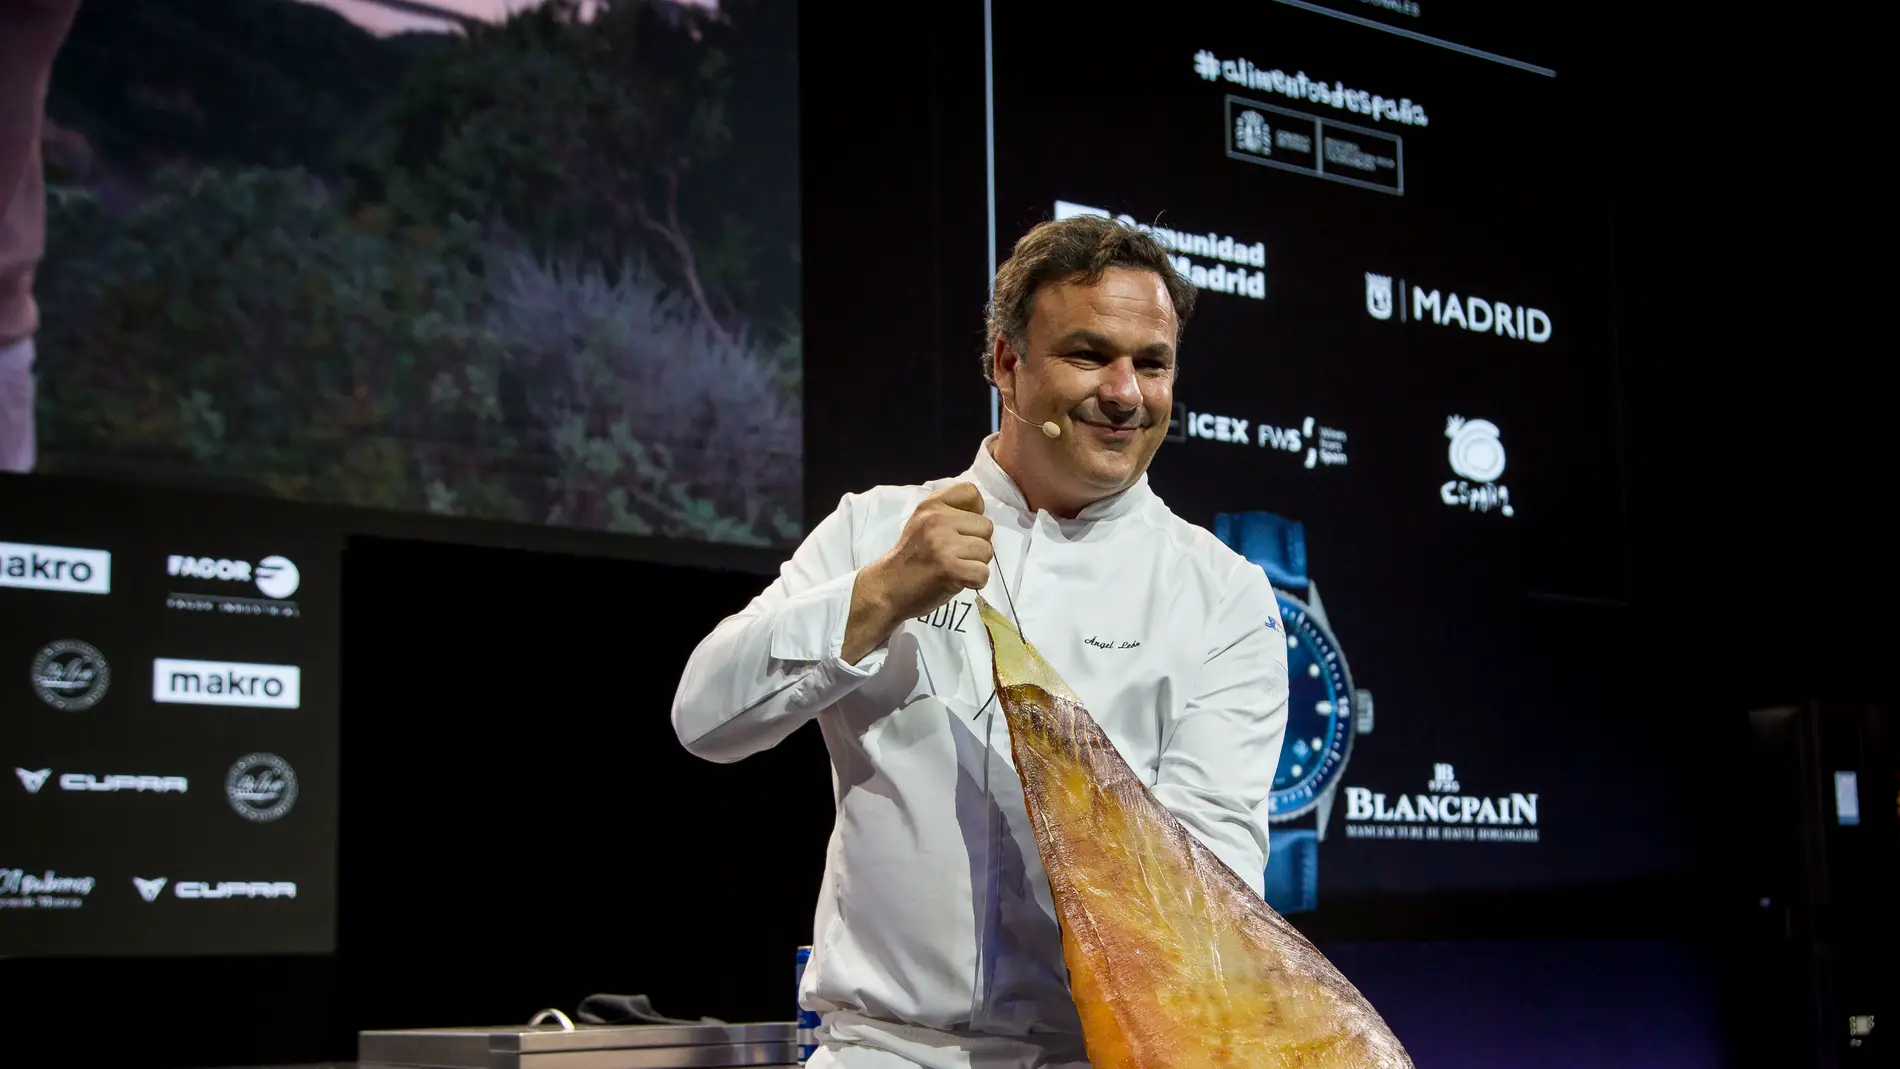 El chef Ángel León con una pieza de jamón de atún